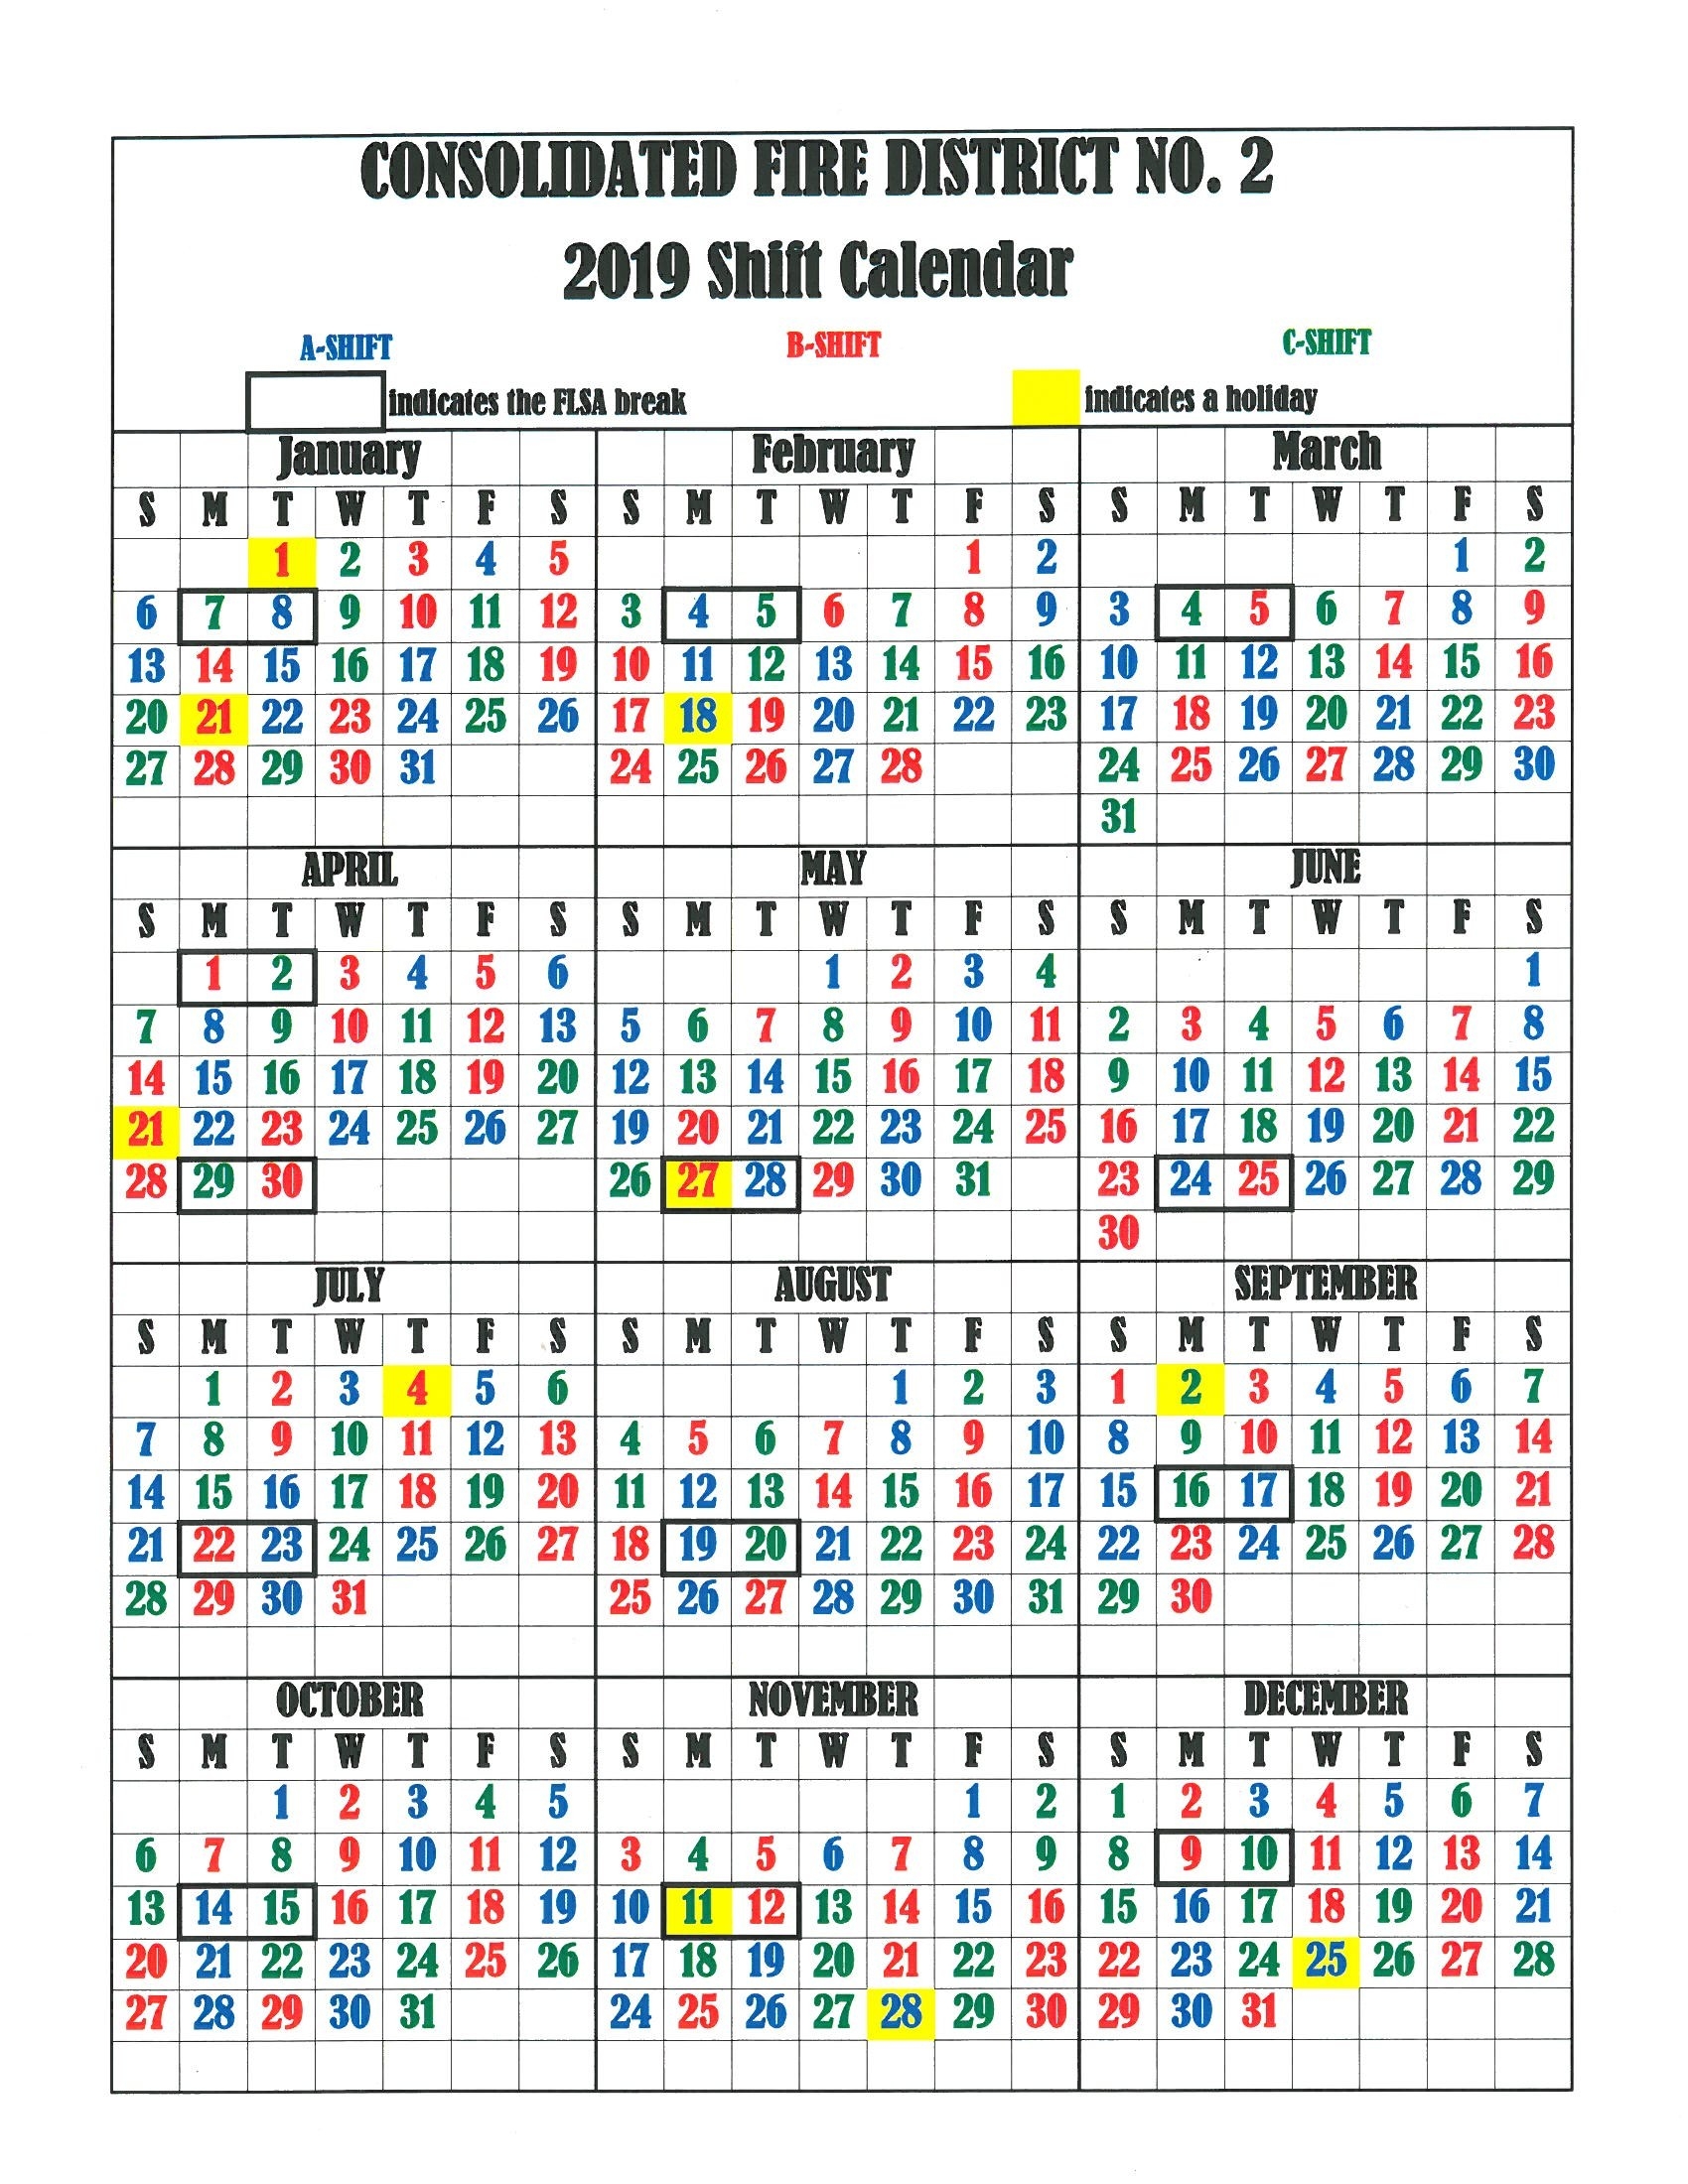 Cfd2 Shift Calendar - Consolidated Fire District #2  Fire Department Schedule Calendar 2020